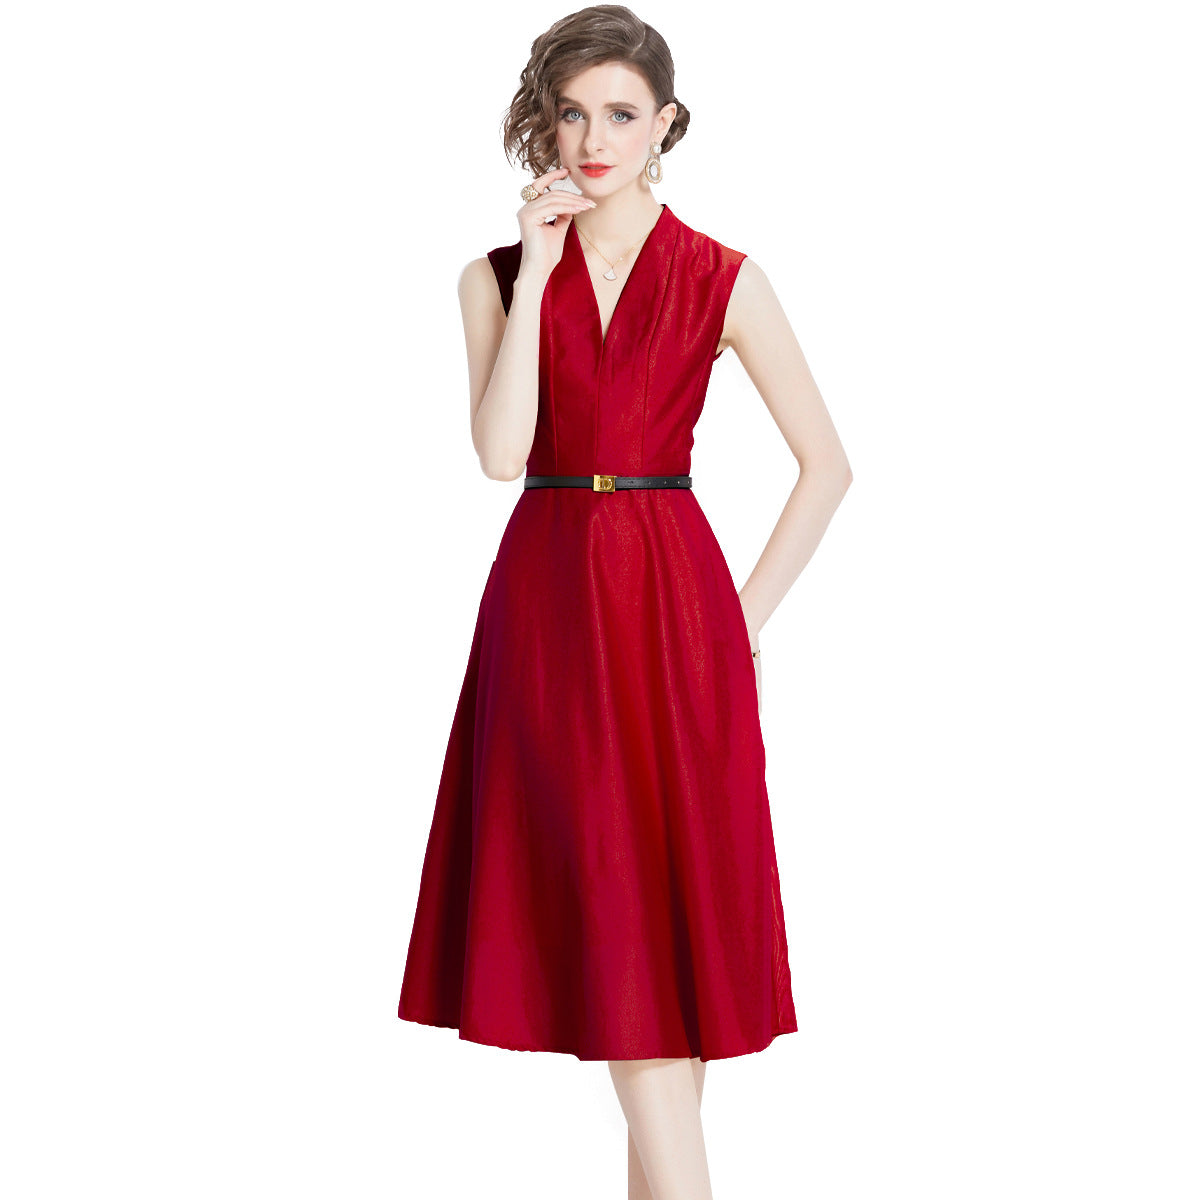 Junge Erwachsene Dame wie Frau Stil rotes ärmelloses Kleid